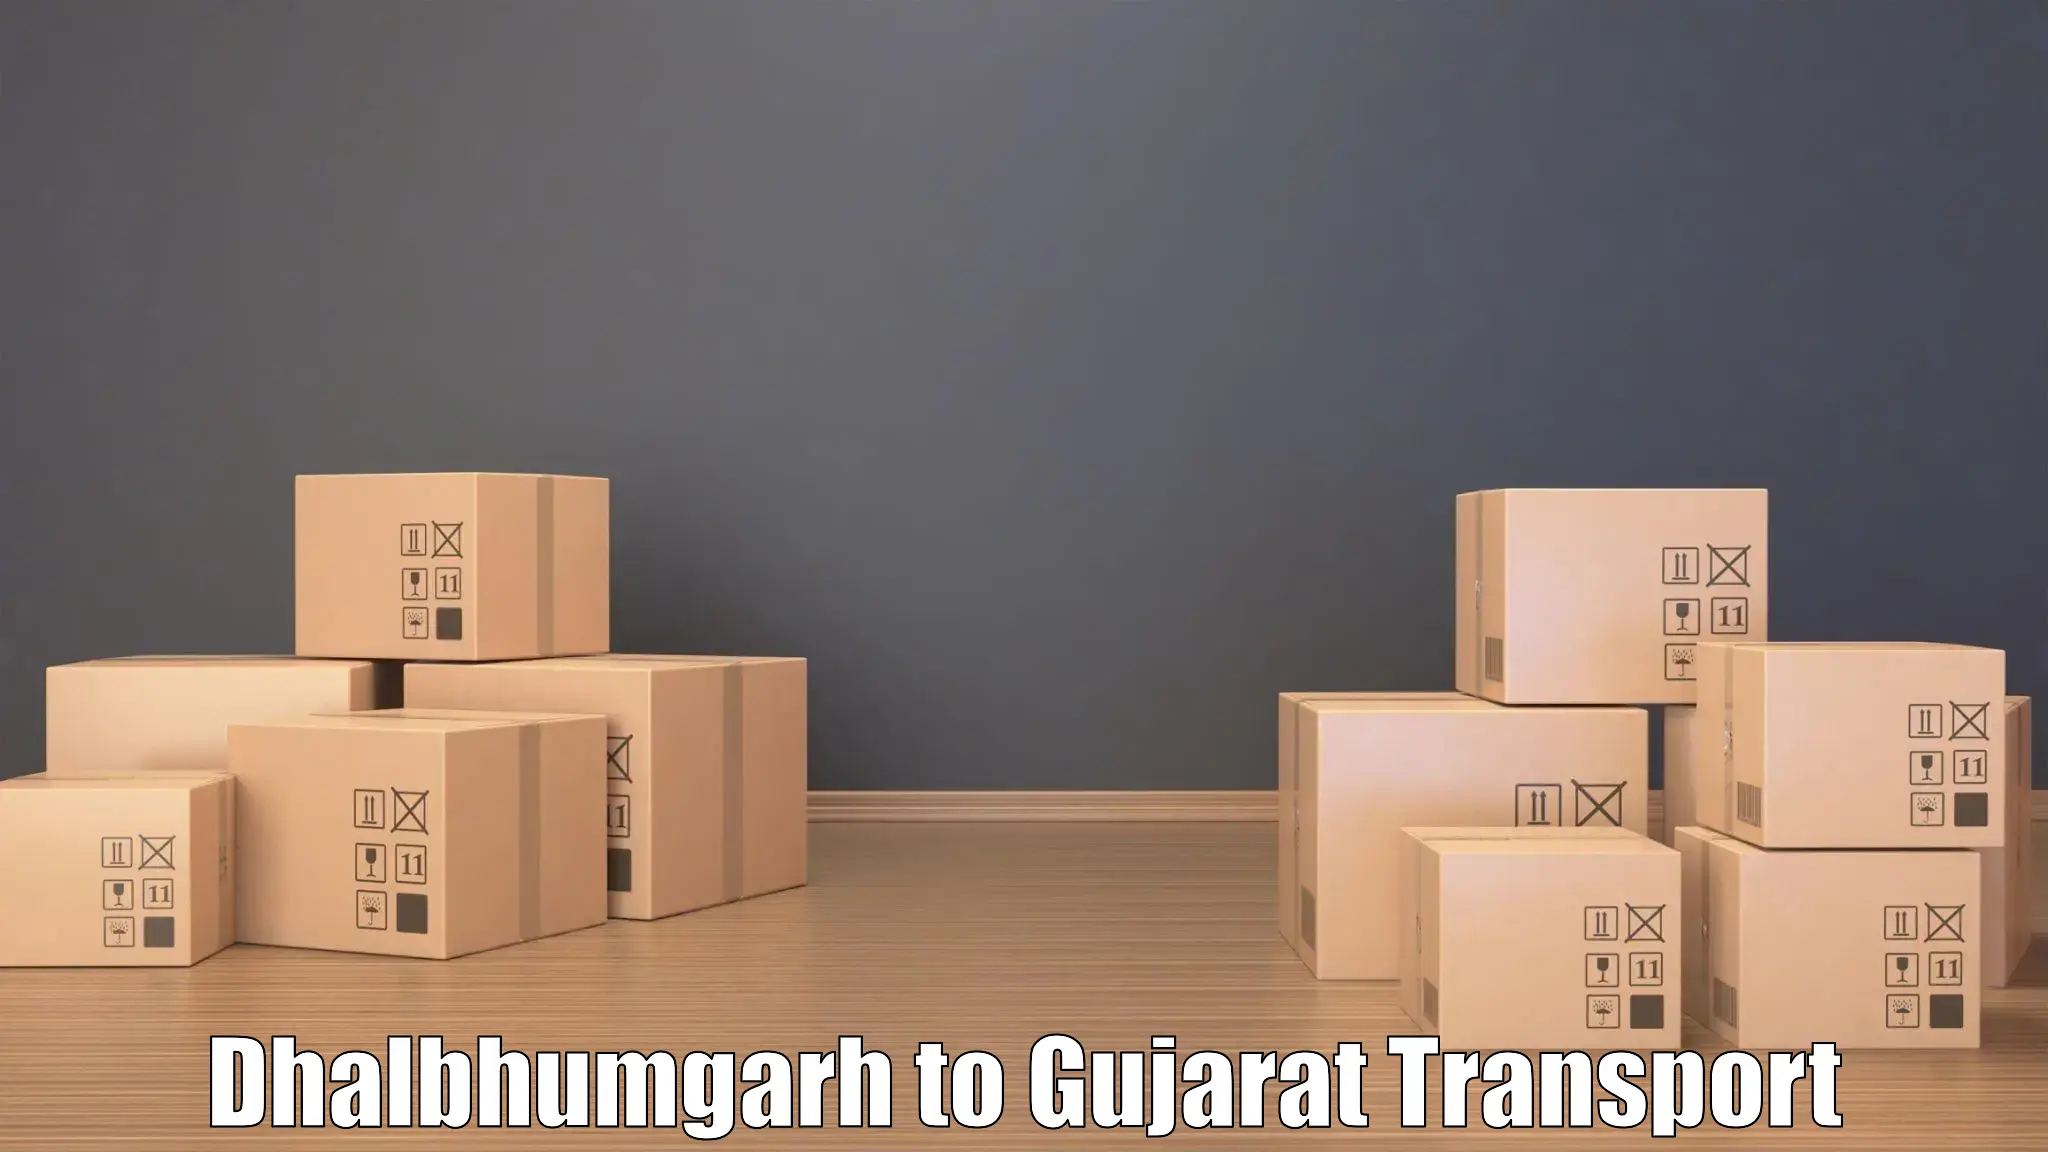 Transportation services Dhalbhumgarh to Gujarat